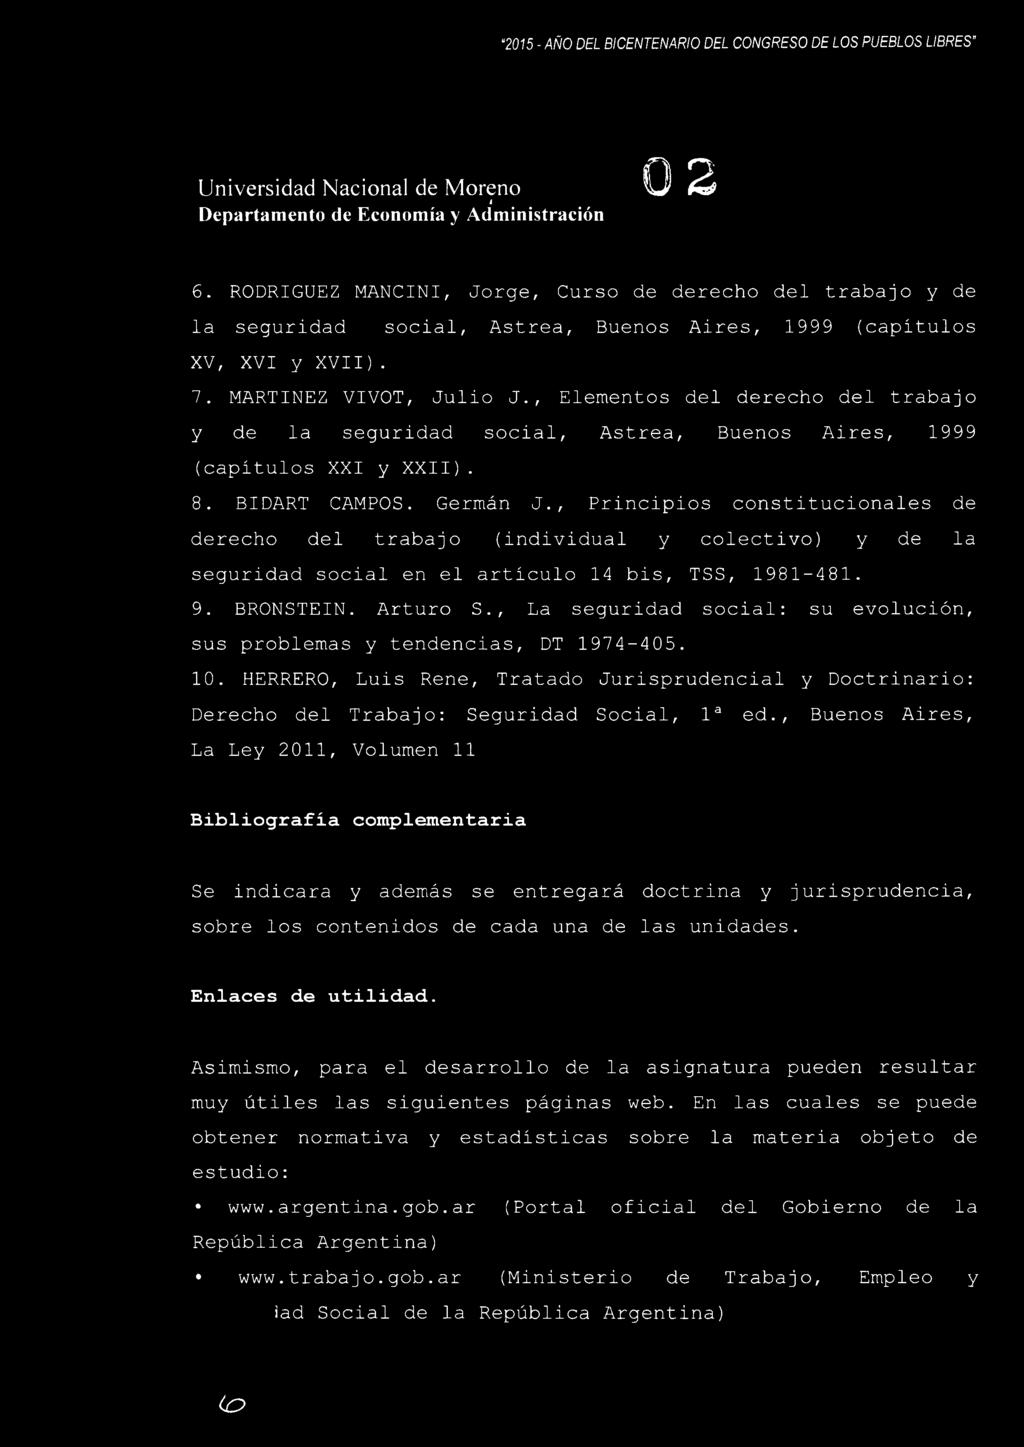 , Elementos del derecho del trabajo y de la seguridad social, Astrea, Buenos Aires, 1999 (capítulos XXI y XXI I). 8. BIDART CAMPOS. Germán J.